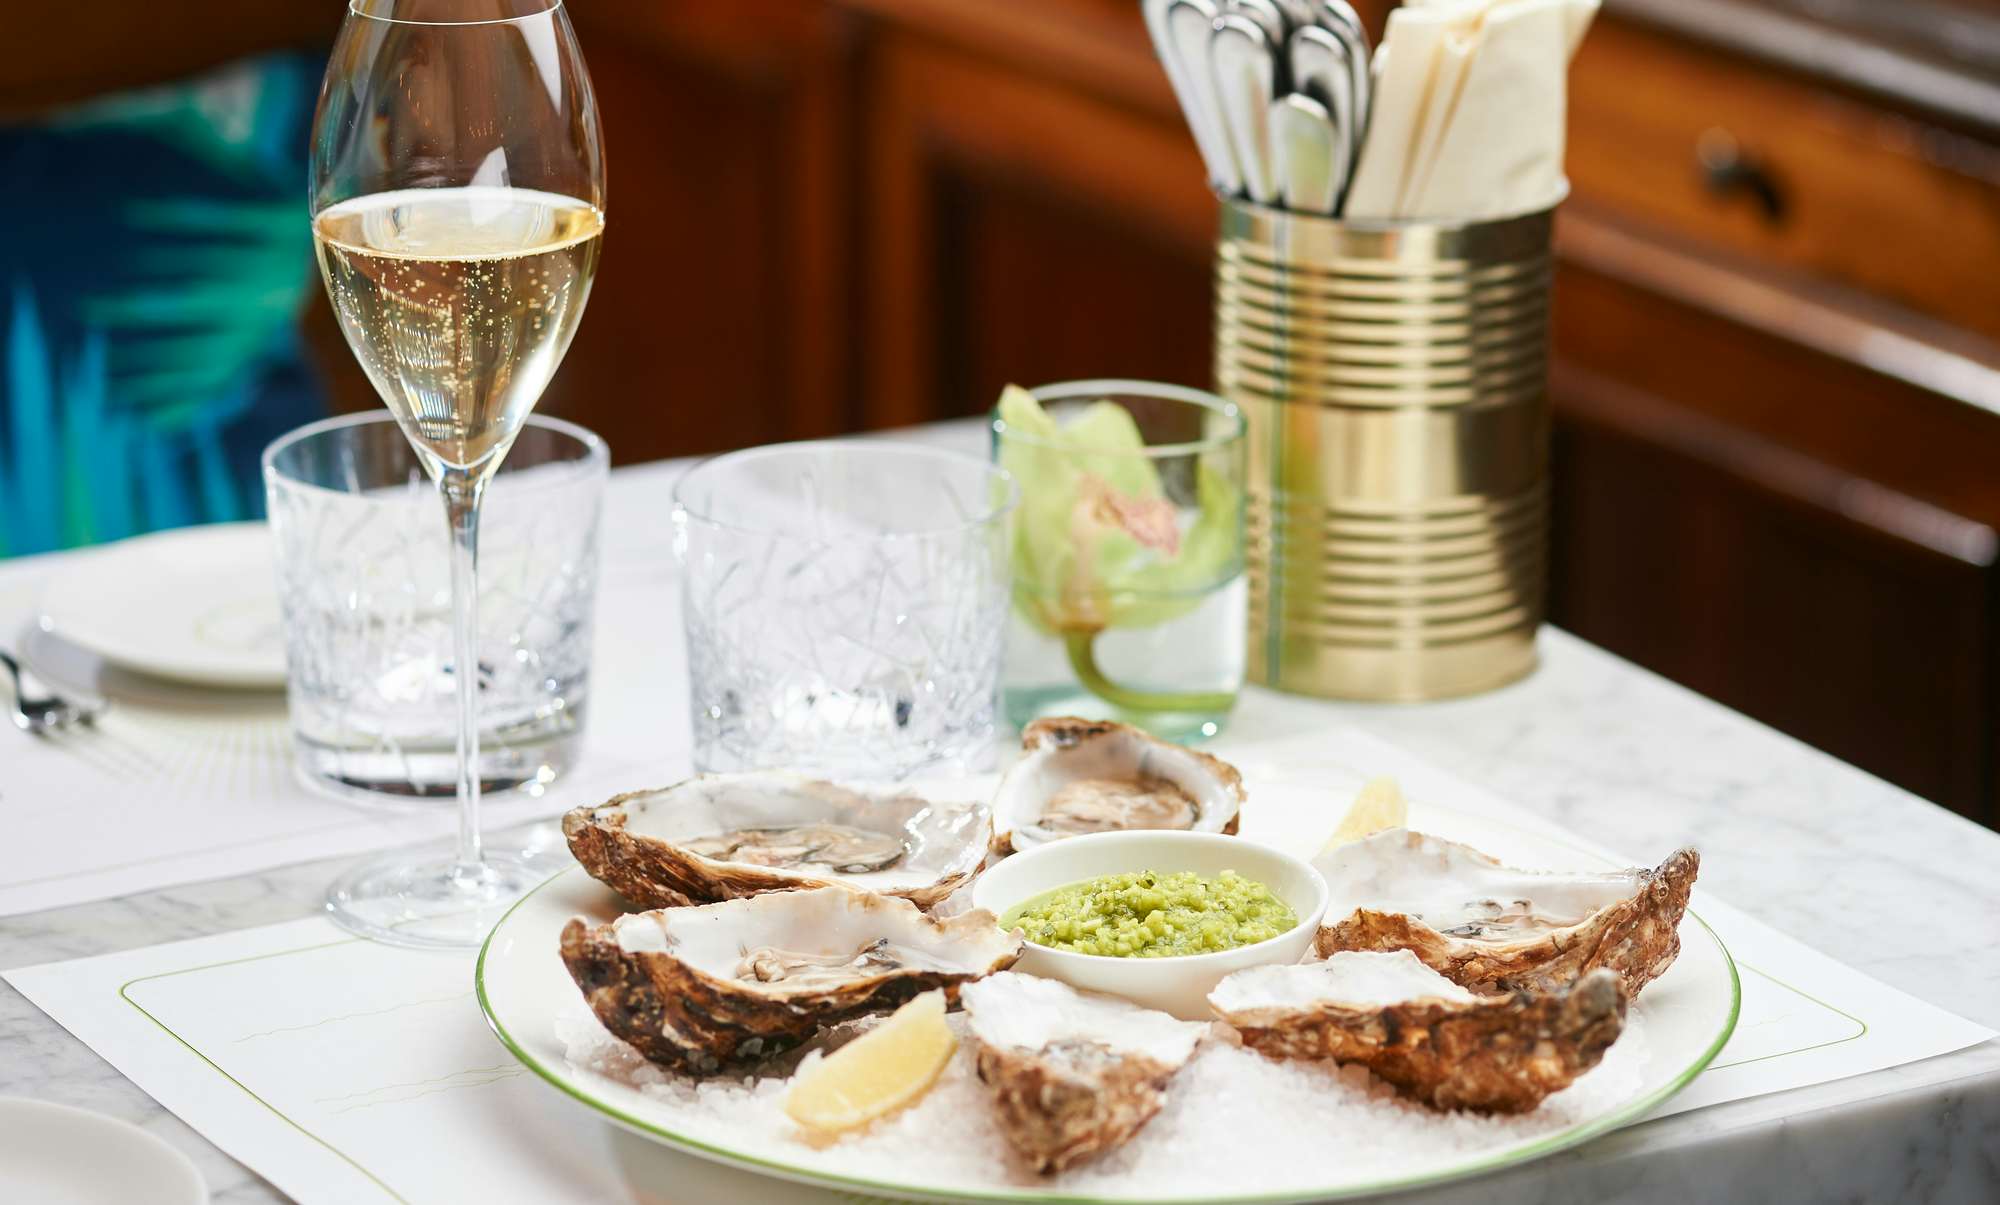 Austern und Champagner - ein beliebtes Duo in der Brasserie Colette Tim Raue